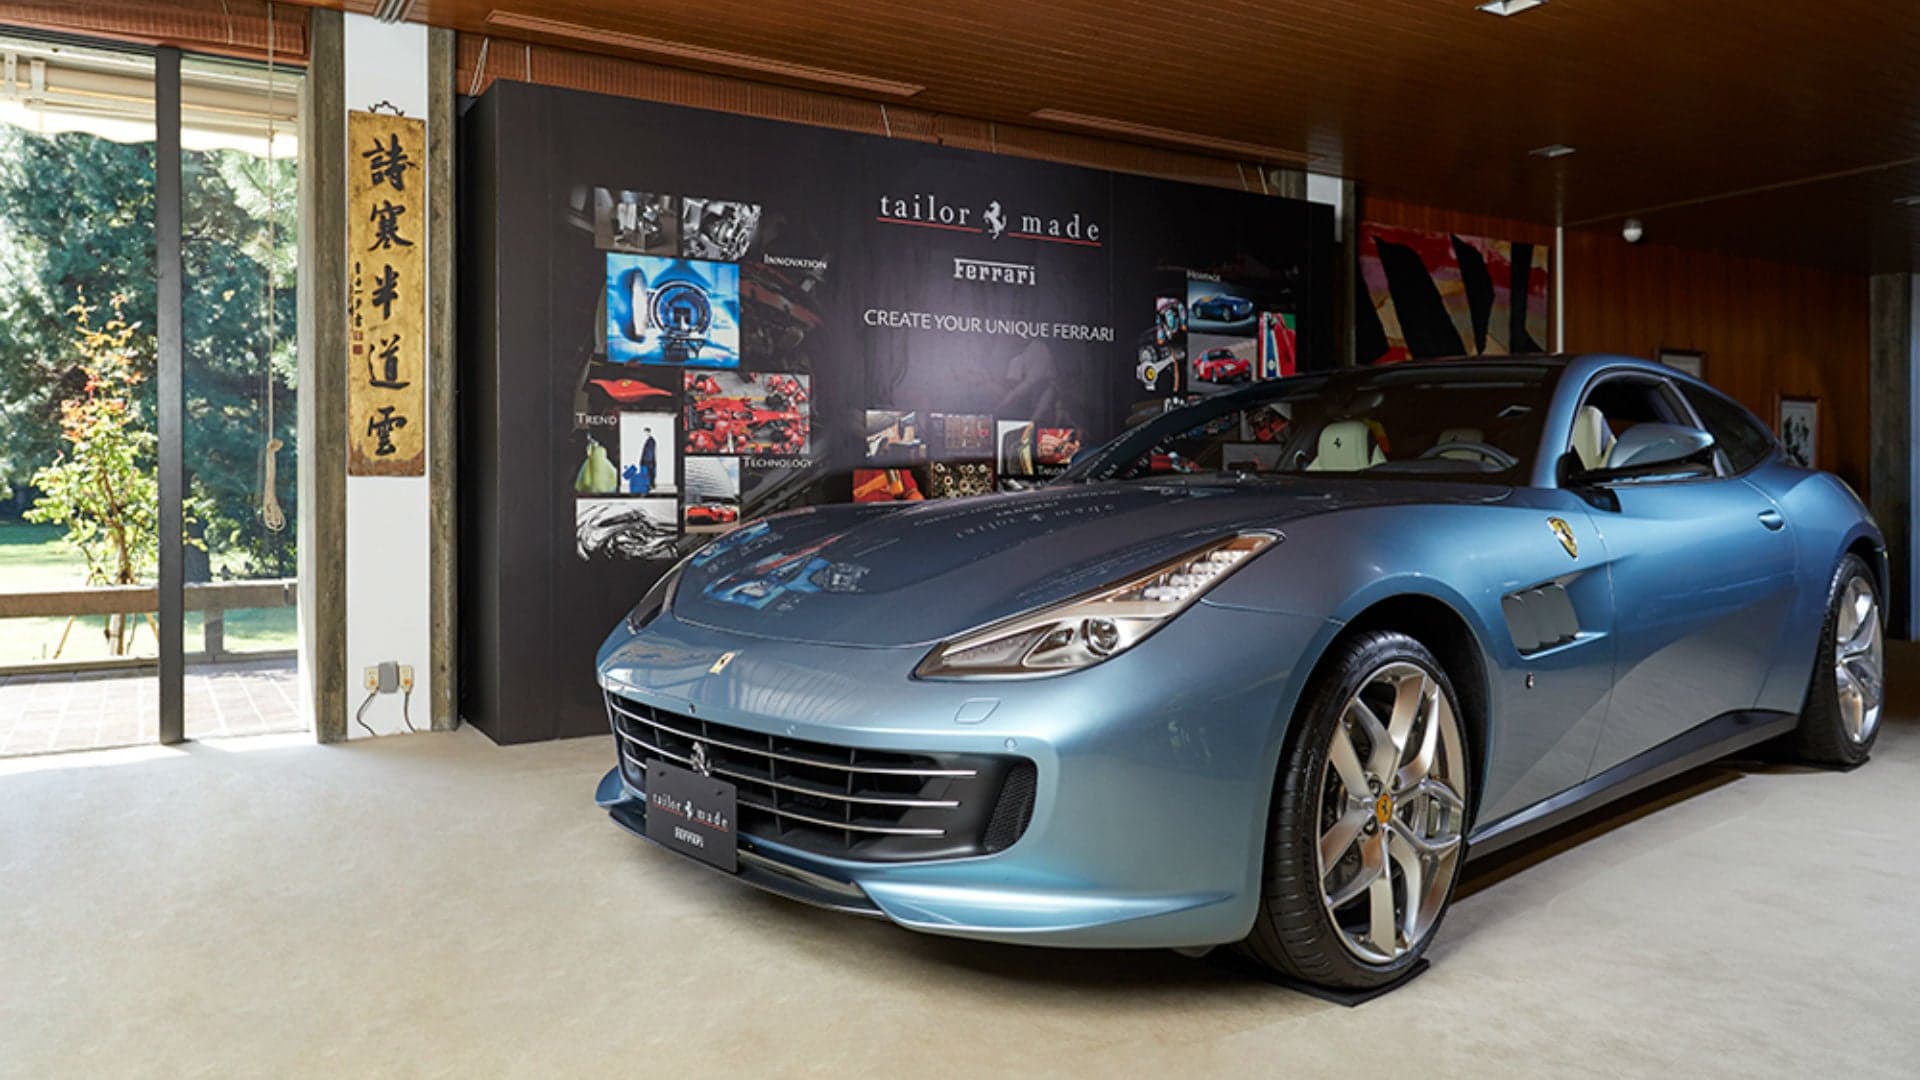 Ferrari Displays ‘Tailor Made’ Lussos in Opulent Display at Italian Embassy in Tokyo